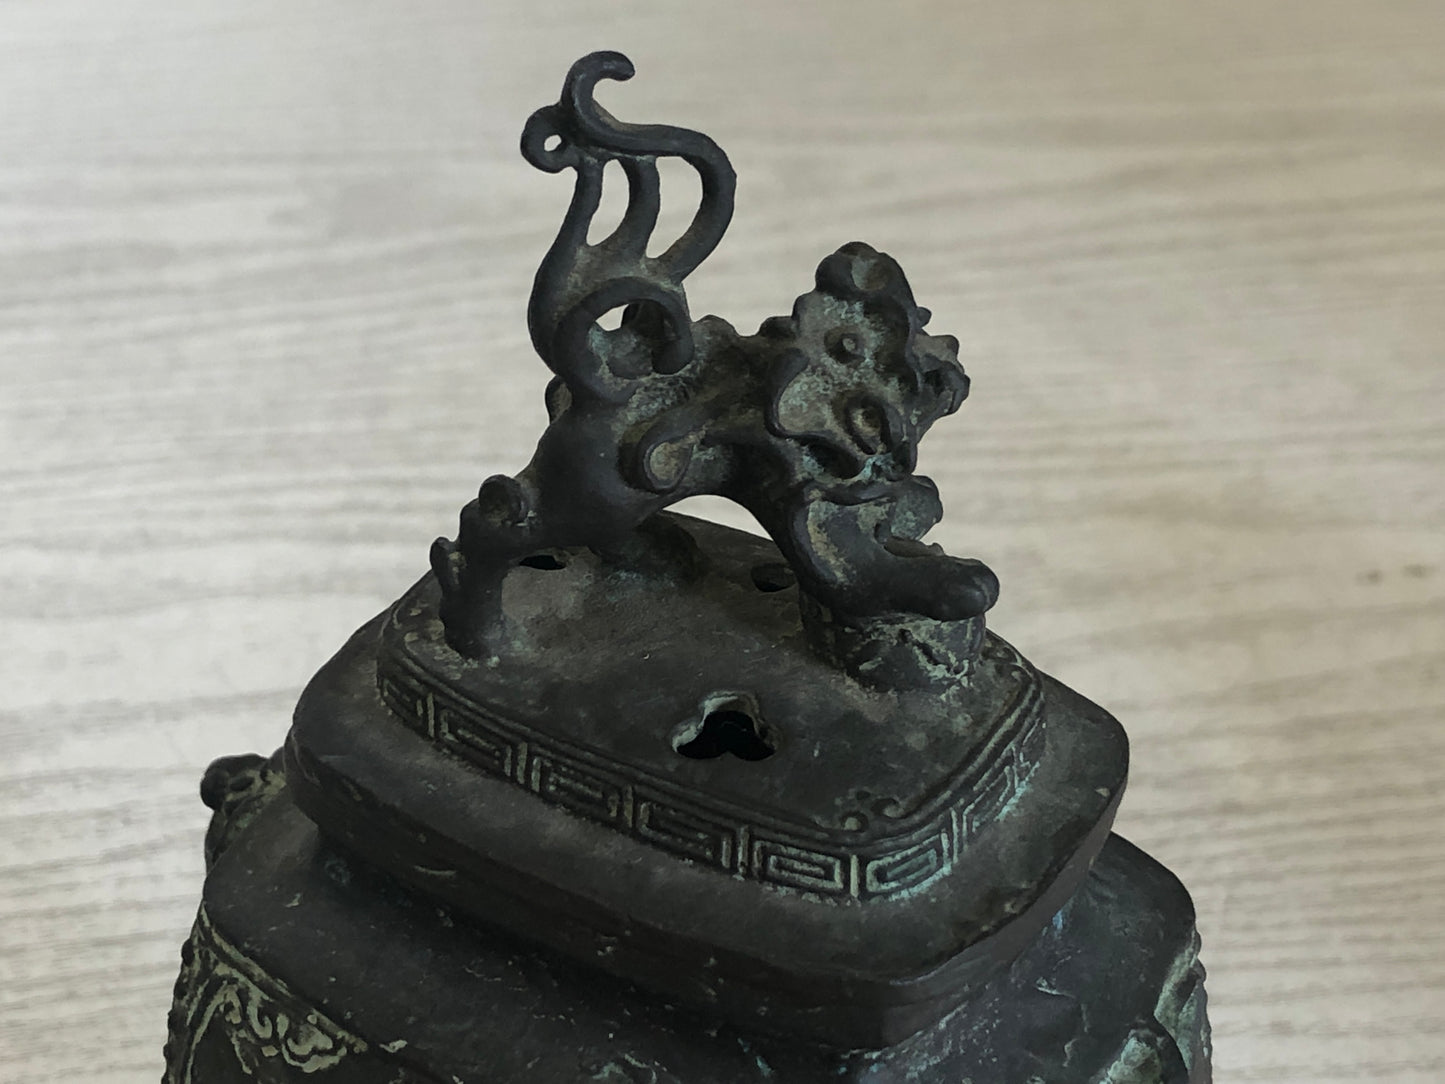 Y3354 KOURO Copper Dragon Lion knob signed Japan fragrance aroma incense burner